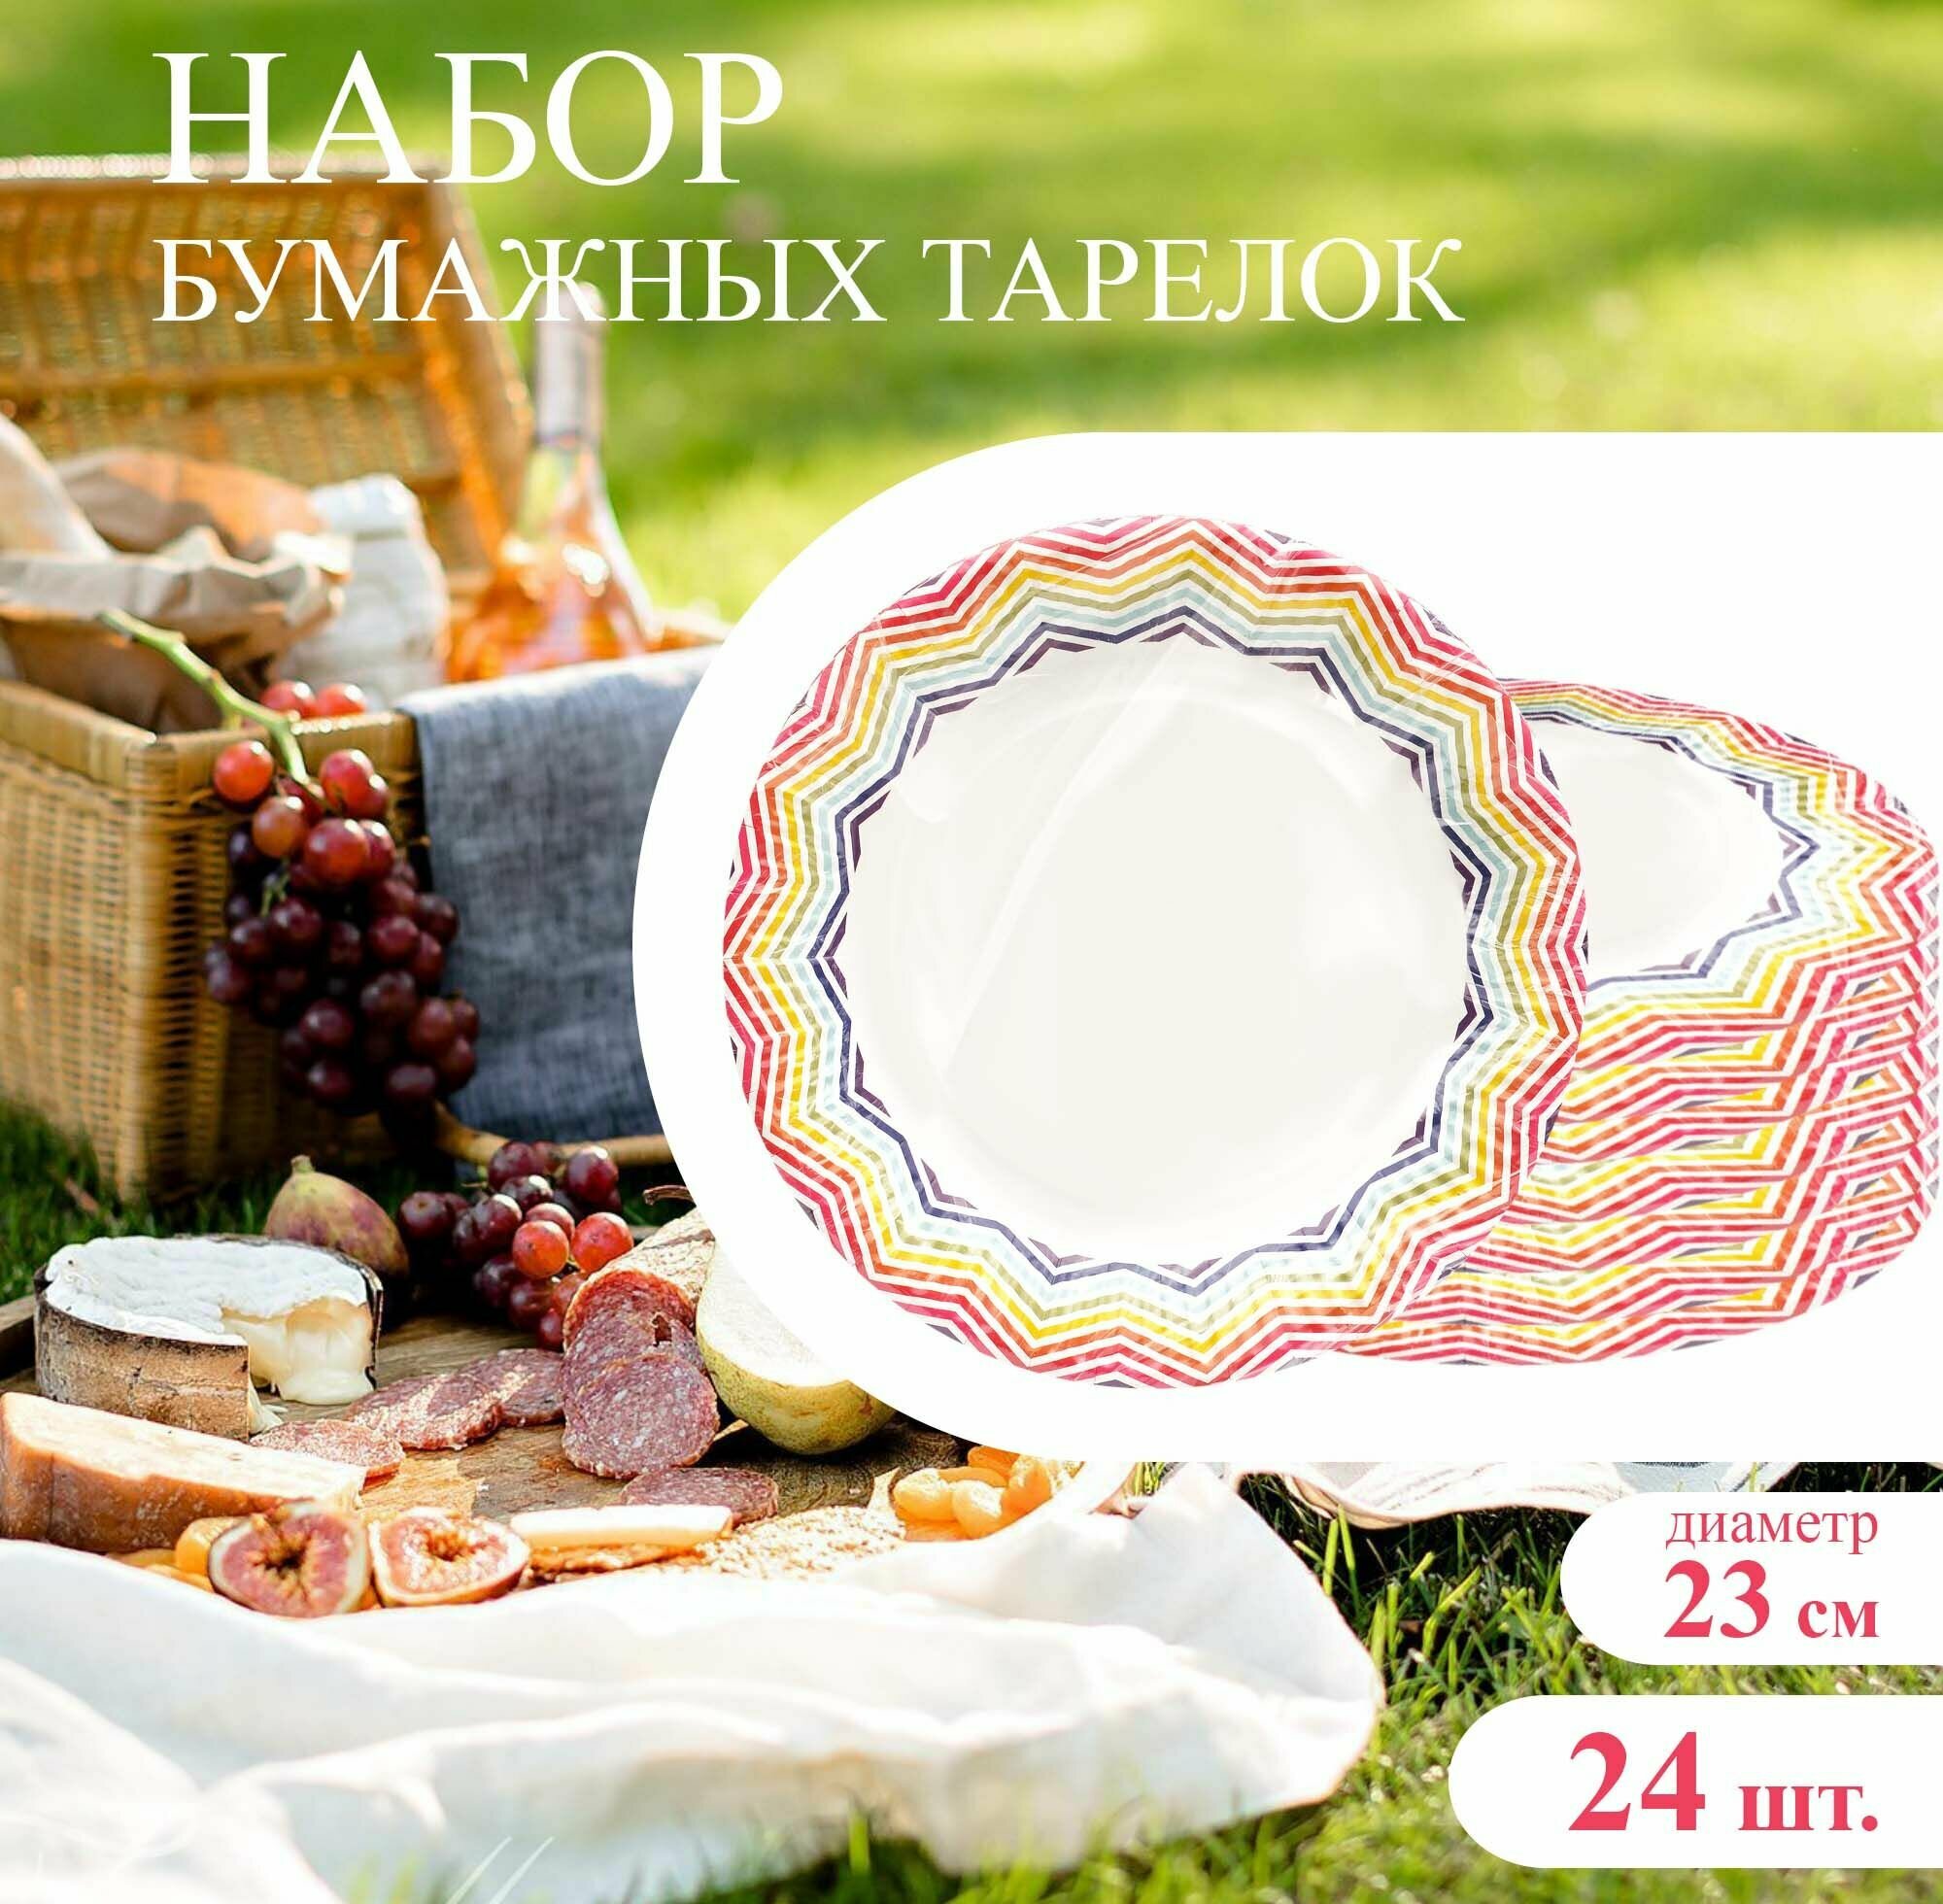 Набор тарелок бумажных, диаметр 23 см, с узором радуга - 24 шт. / набор одноразовой посуды, картонных тарелок